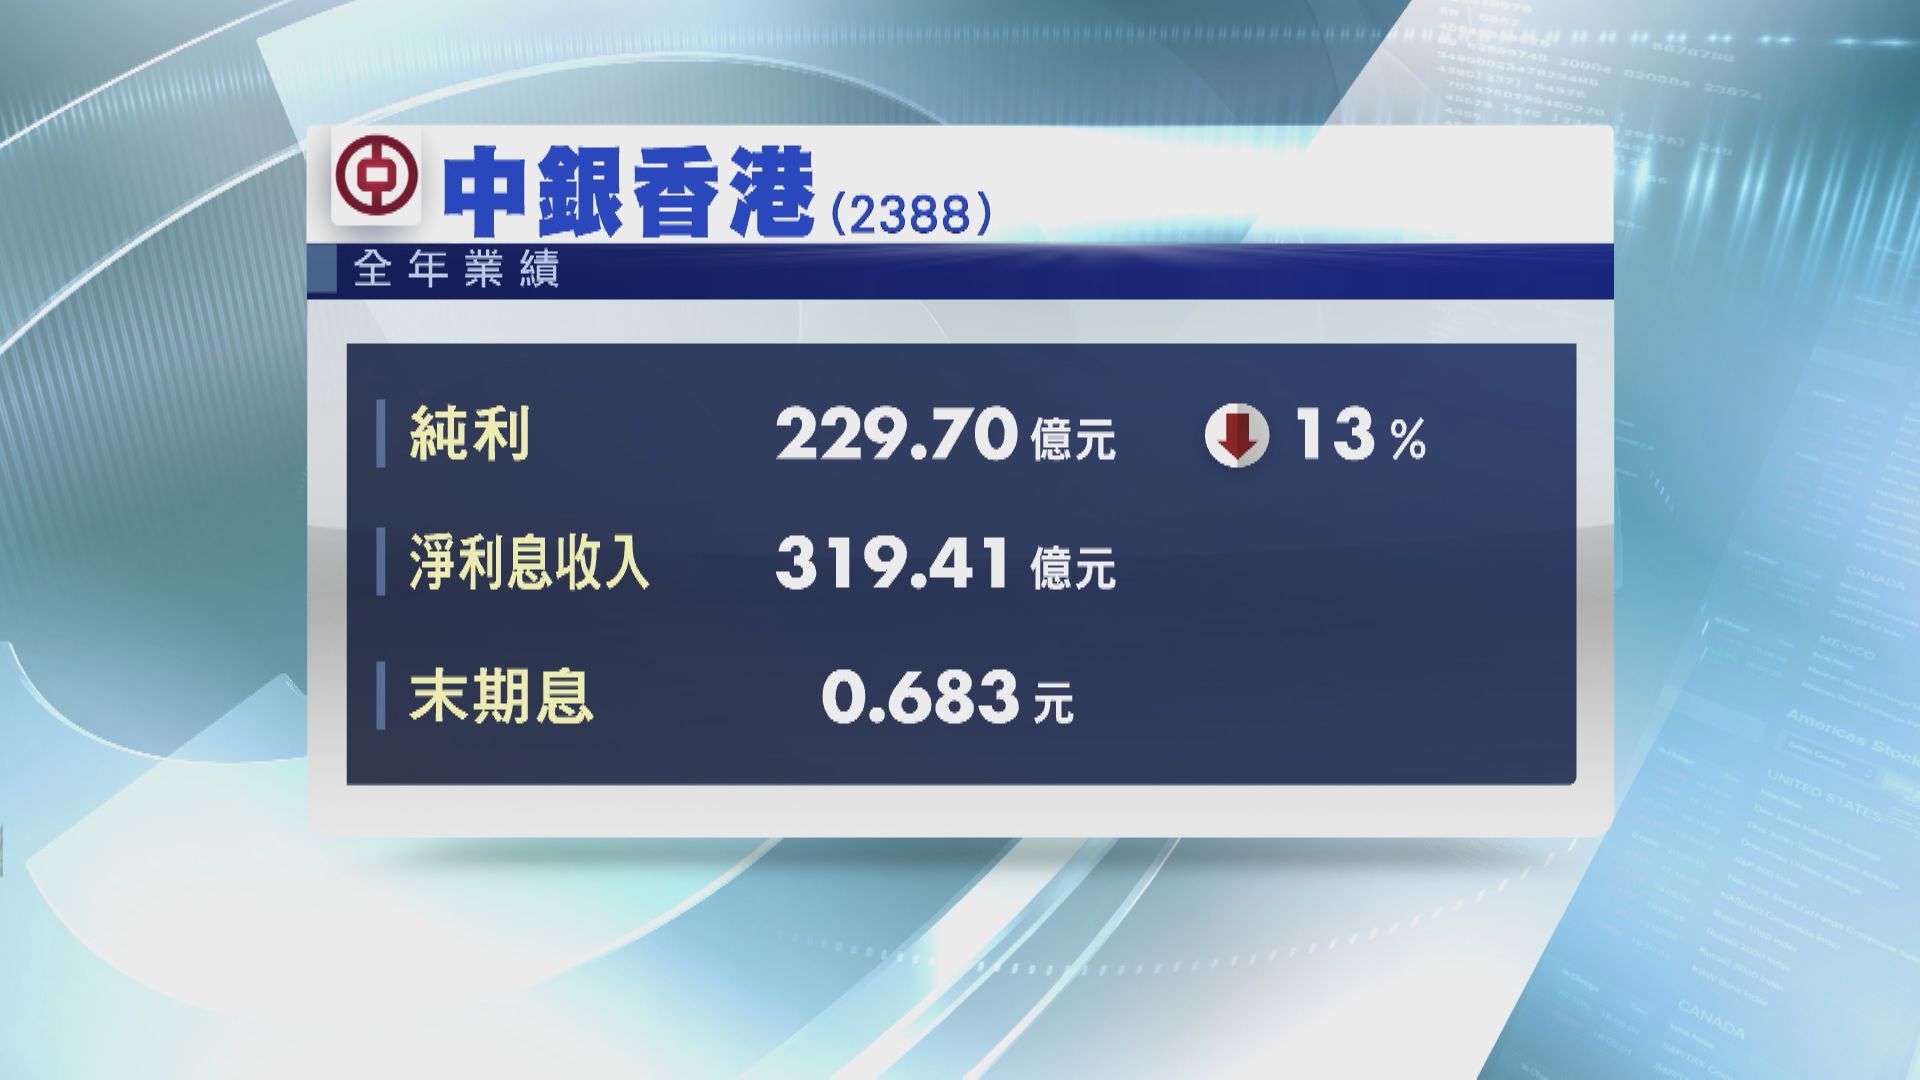 【業績速報】中銀香港少賺13%  冀維持現有派息比率